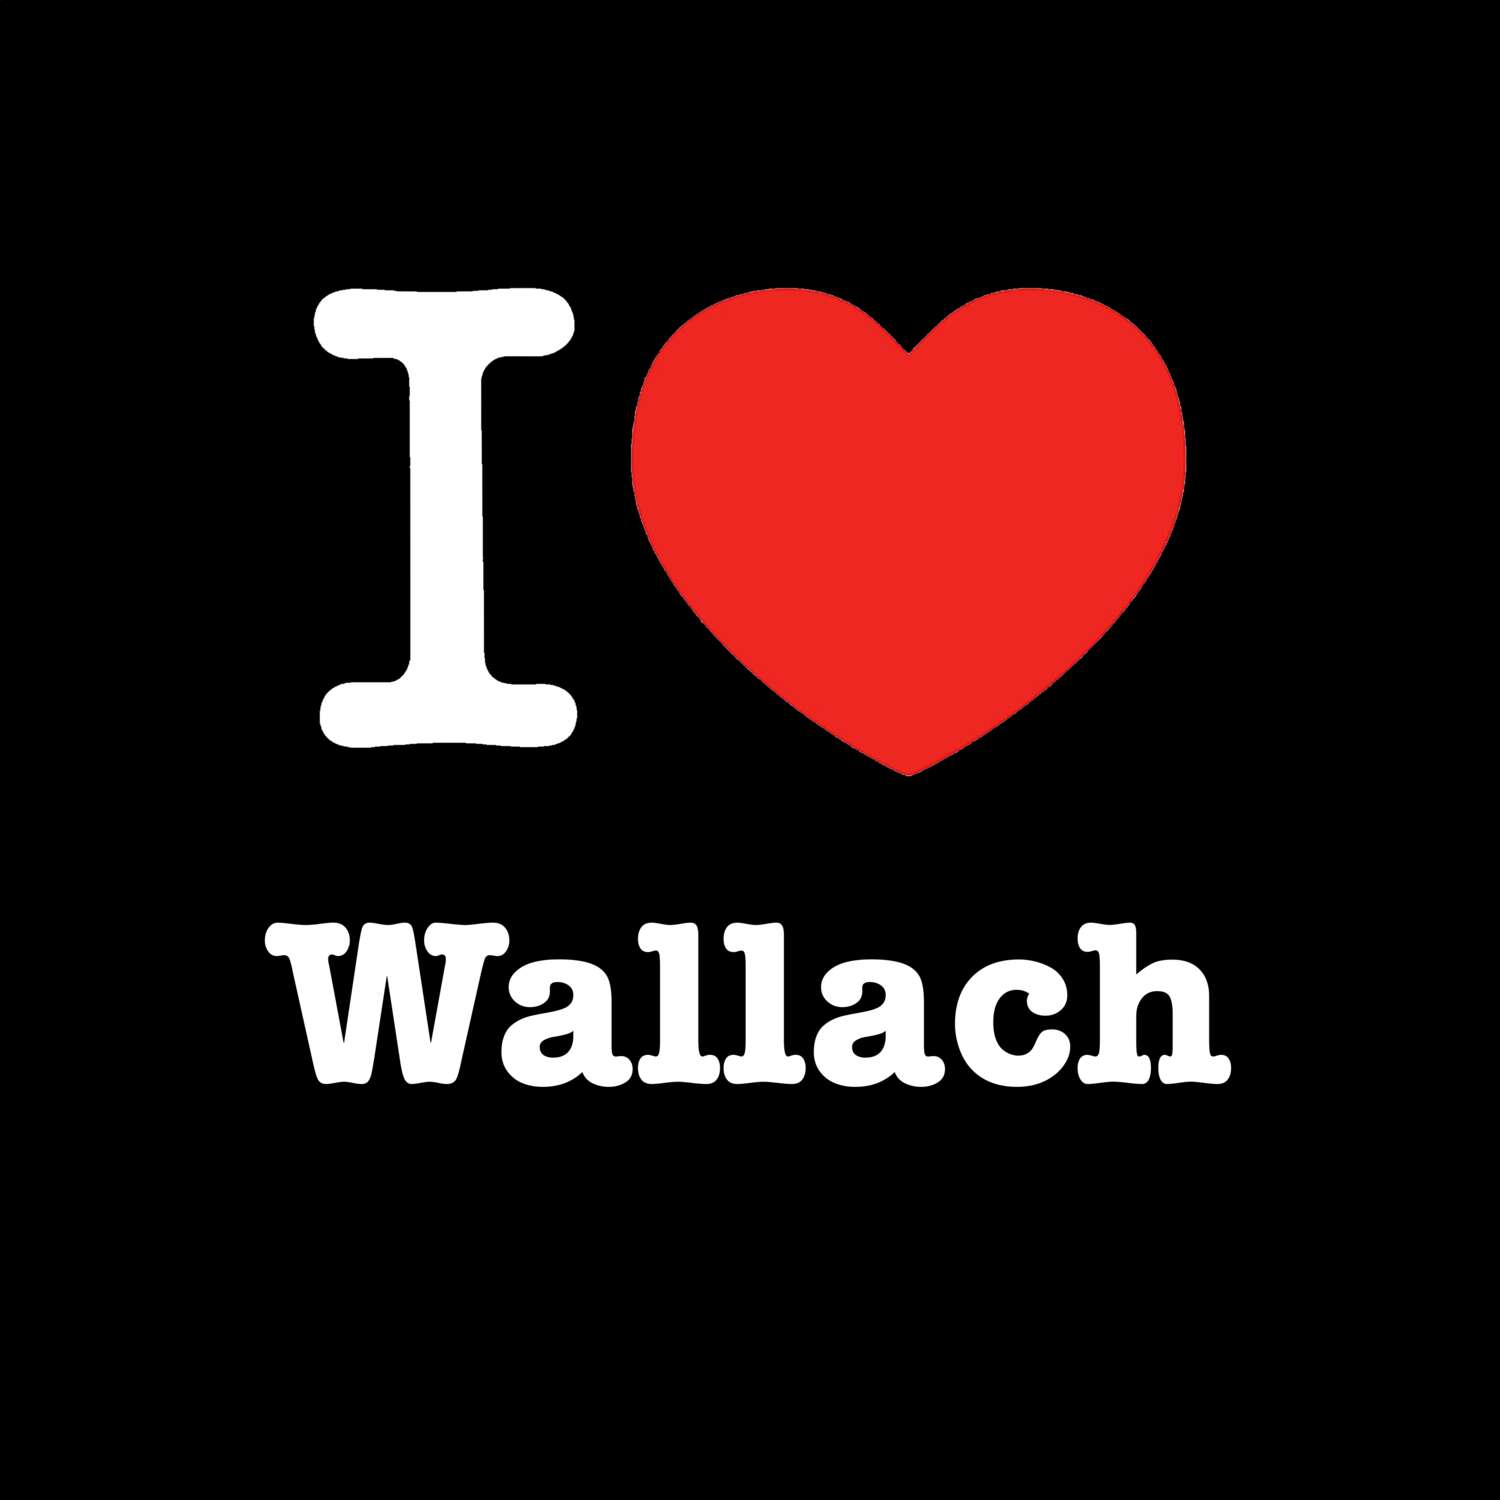 Wallach T-Shirt »I love«